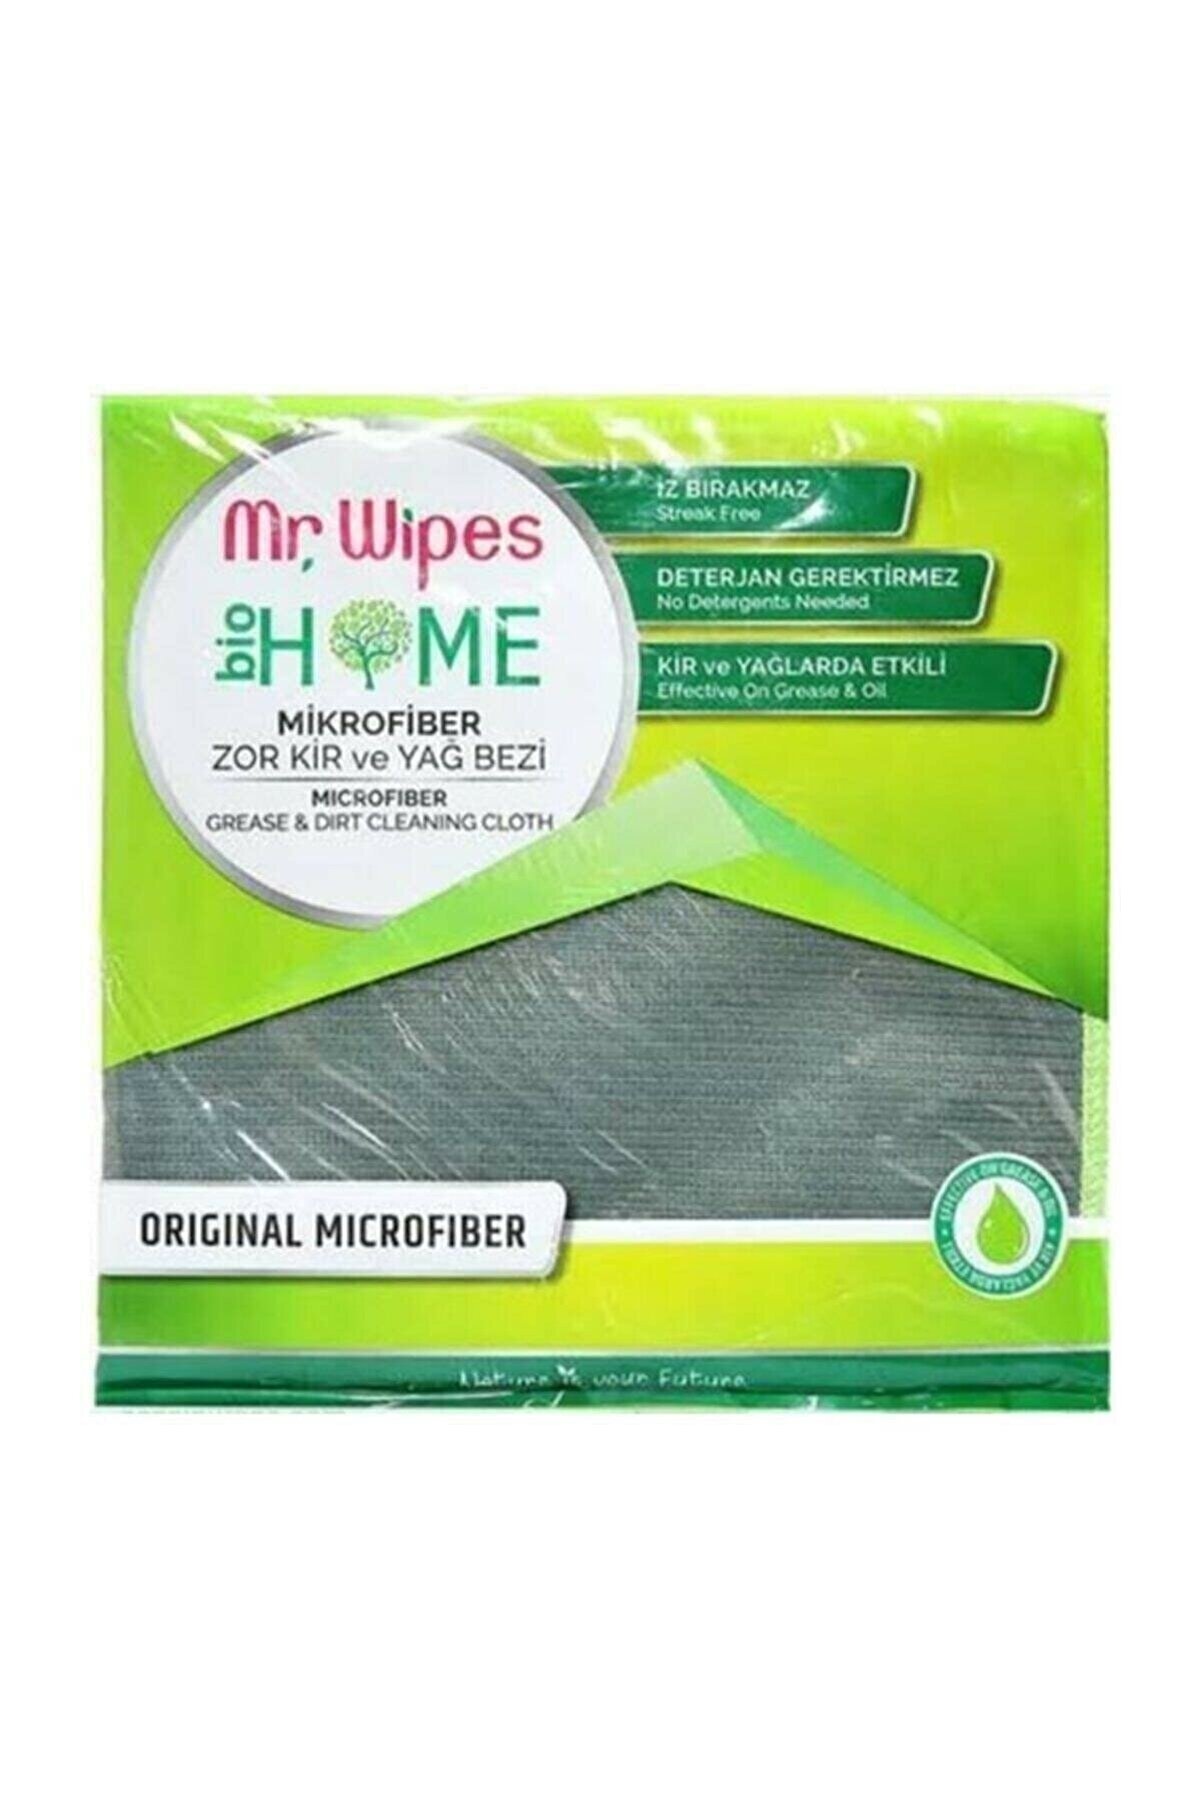 Farmasi Mr. Wipes Bio Home Antibakteriyel Mikrofiber Zor Kir Ve Yağ Bezi 40x40 Cm.